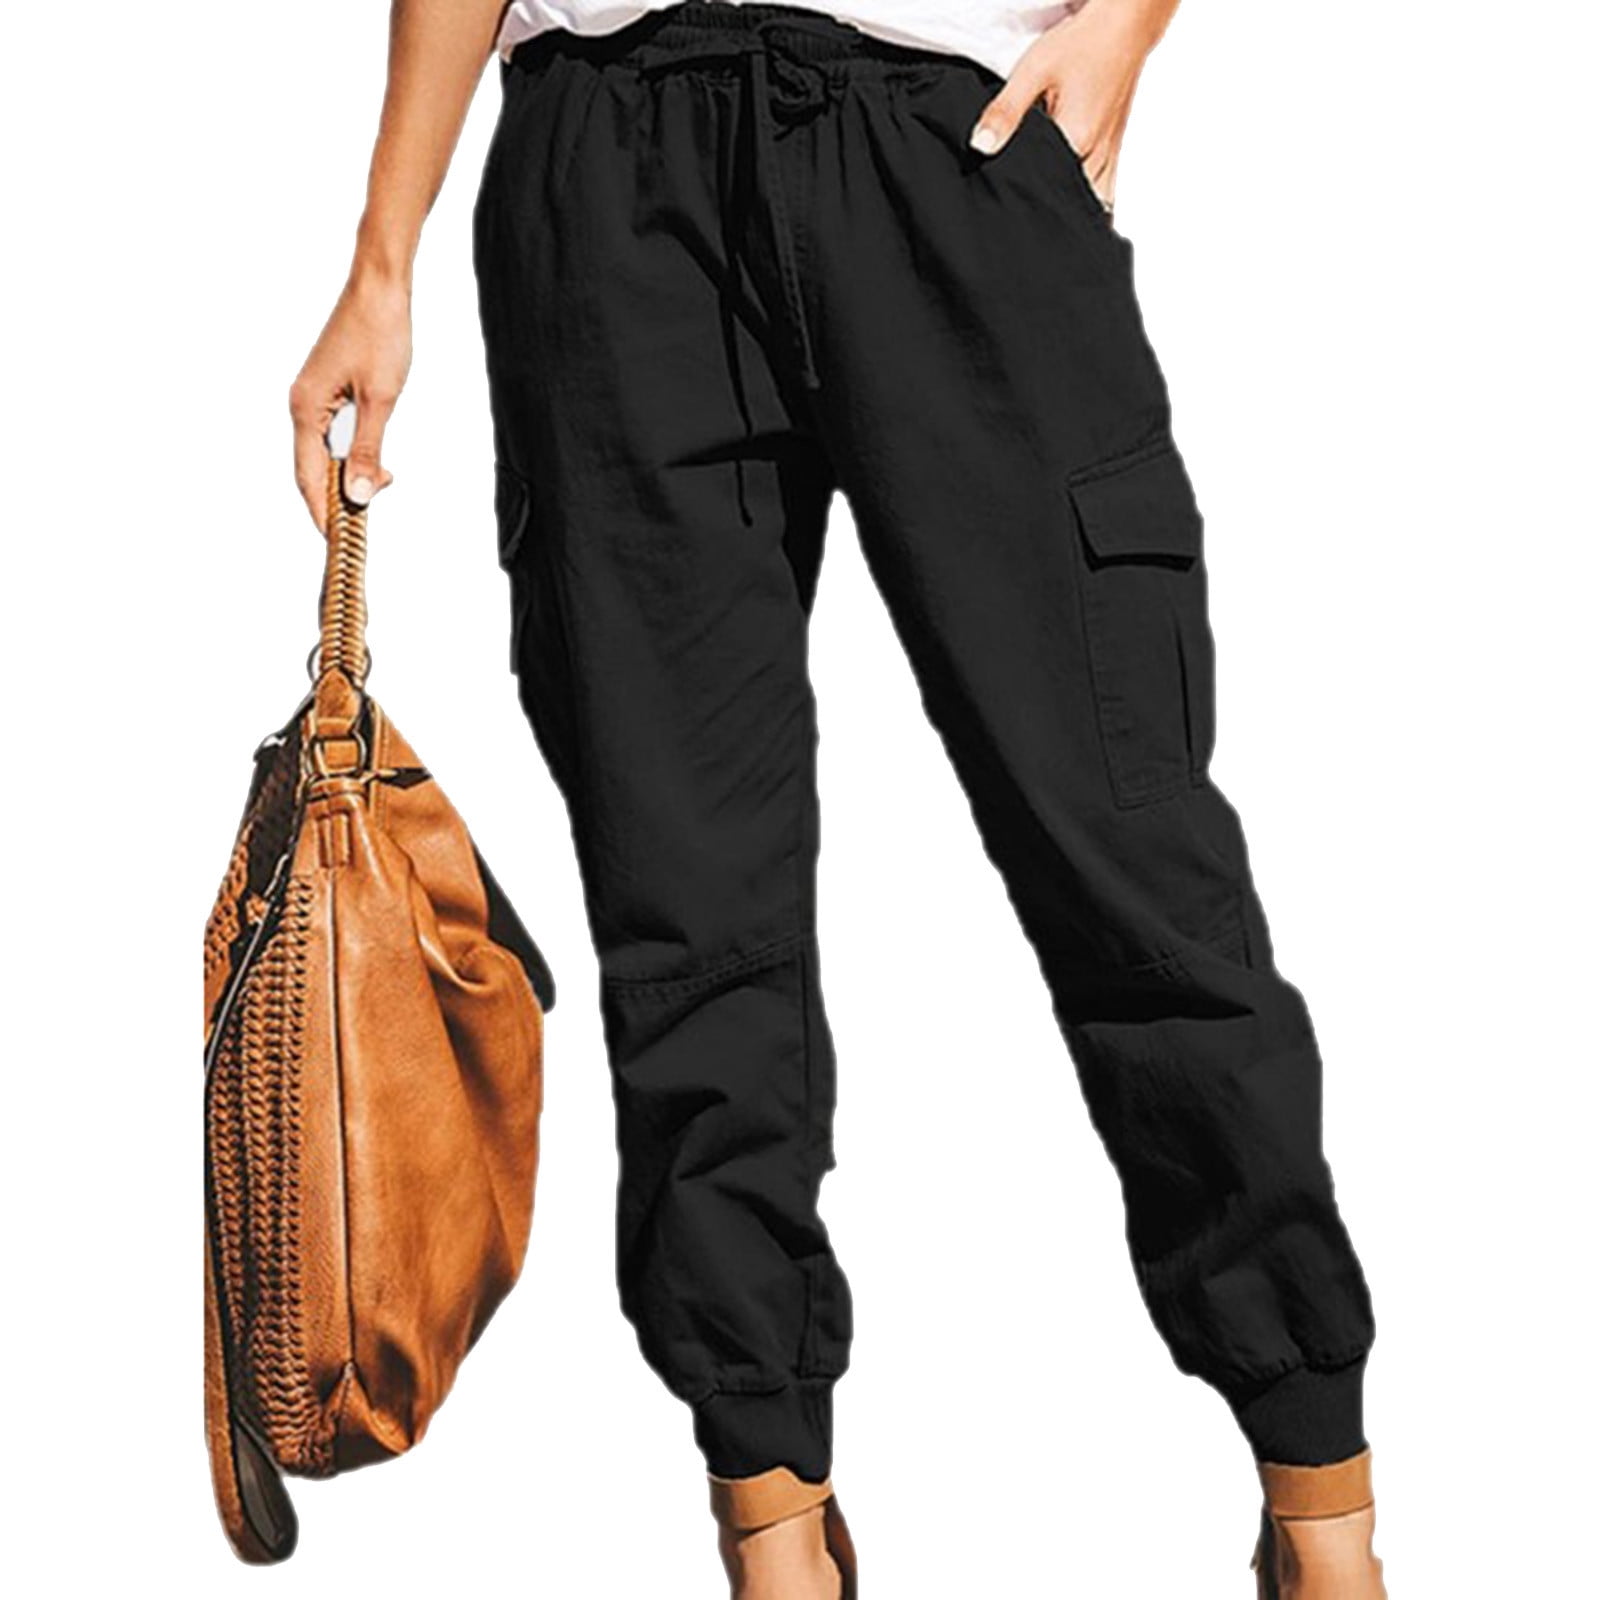 CHGBMOK Clearance Fashion Cargo Pants Women Plus Size